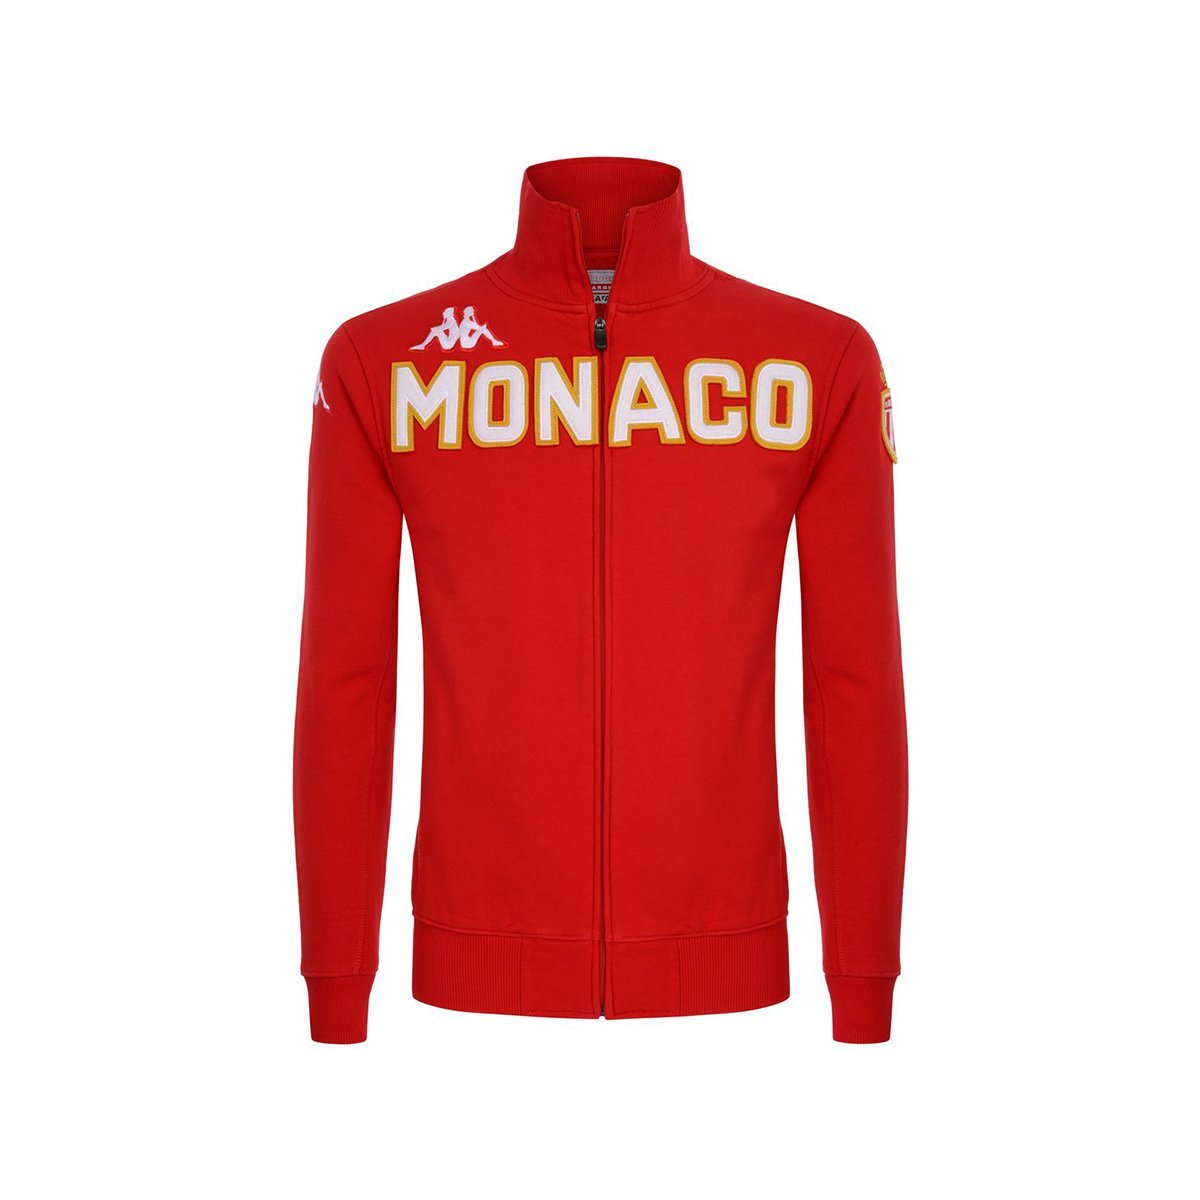 Chaqueta Eroi Fleece As Monaco Rojo Niños - Imagen 1